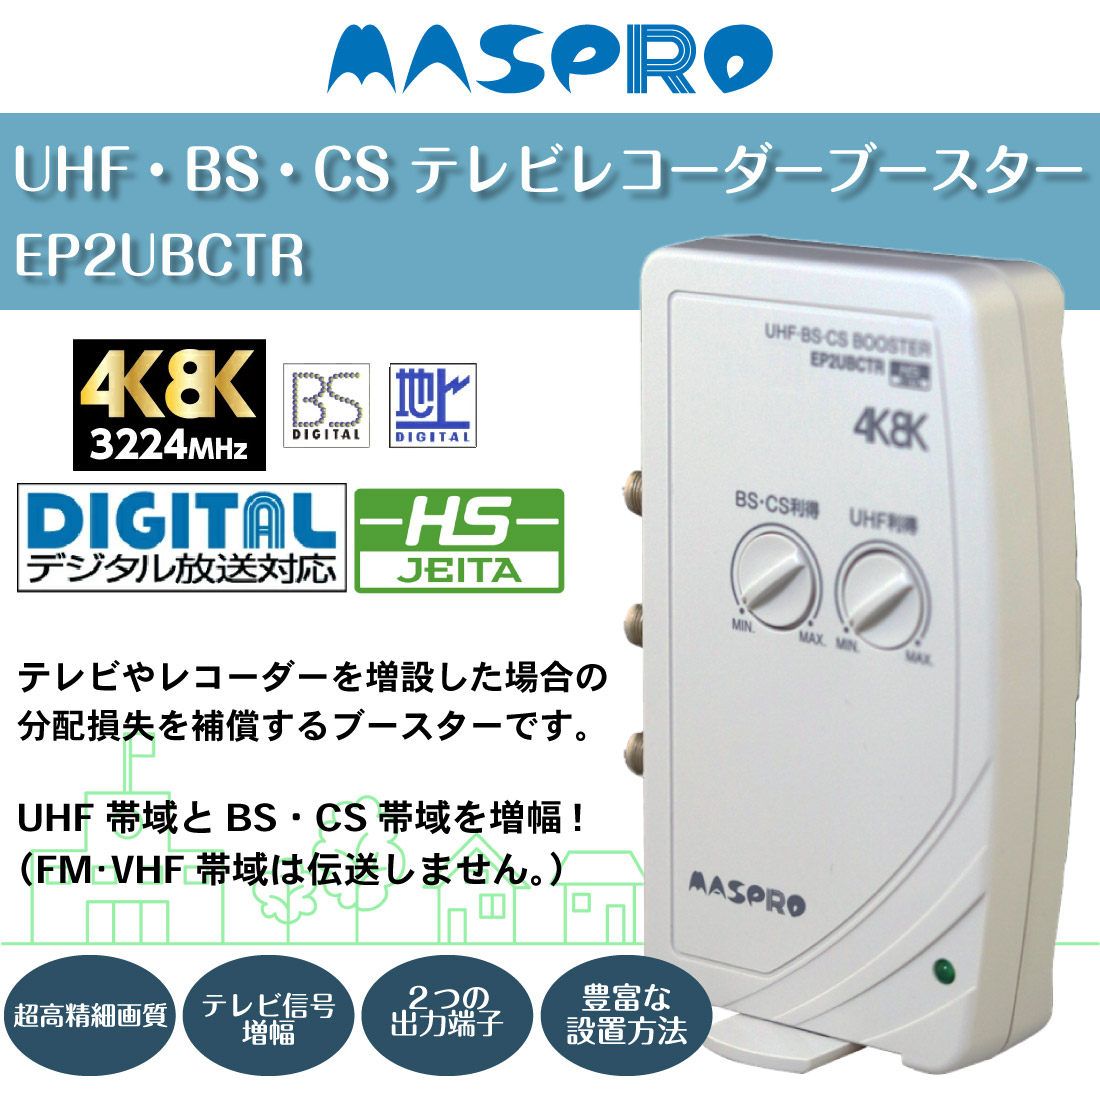 MASPRO/マスプロ EP2UBCTR UHF・BS・CS テレビレコーダーブースター